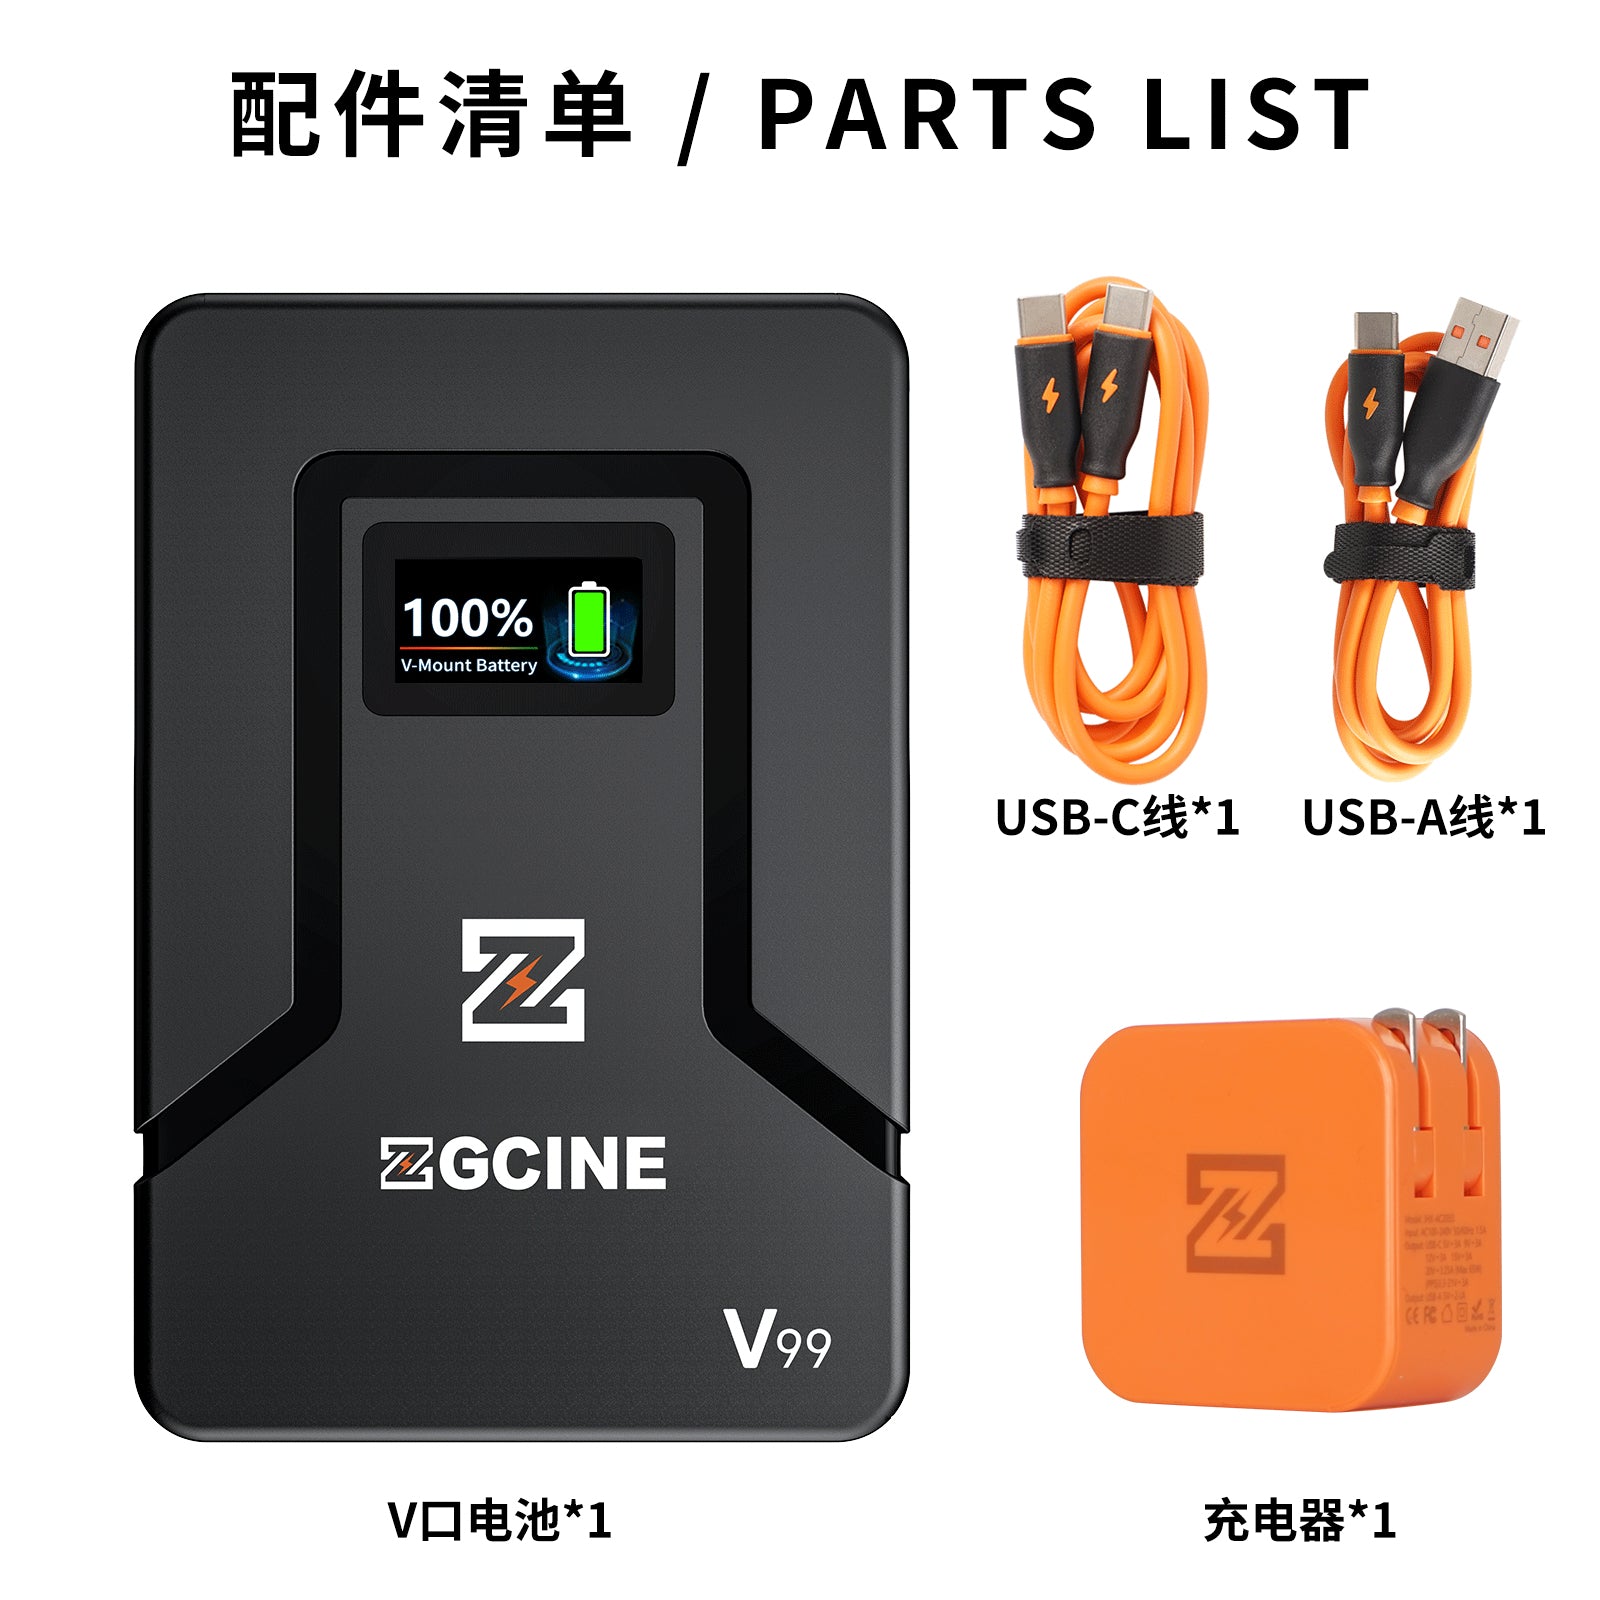 ZGCINE ZG-V99 V2 Upgraded Version Mini V-Mount Battery with 